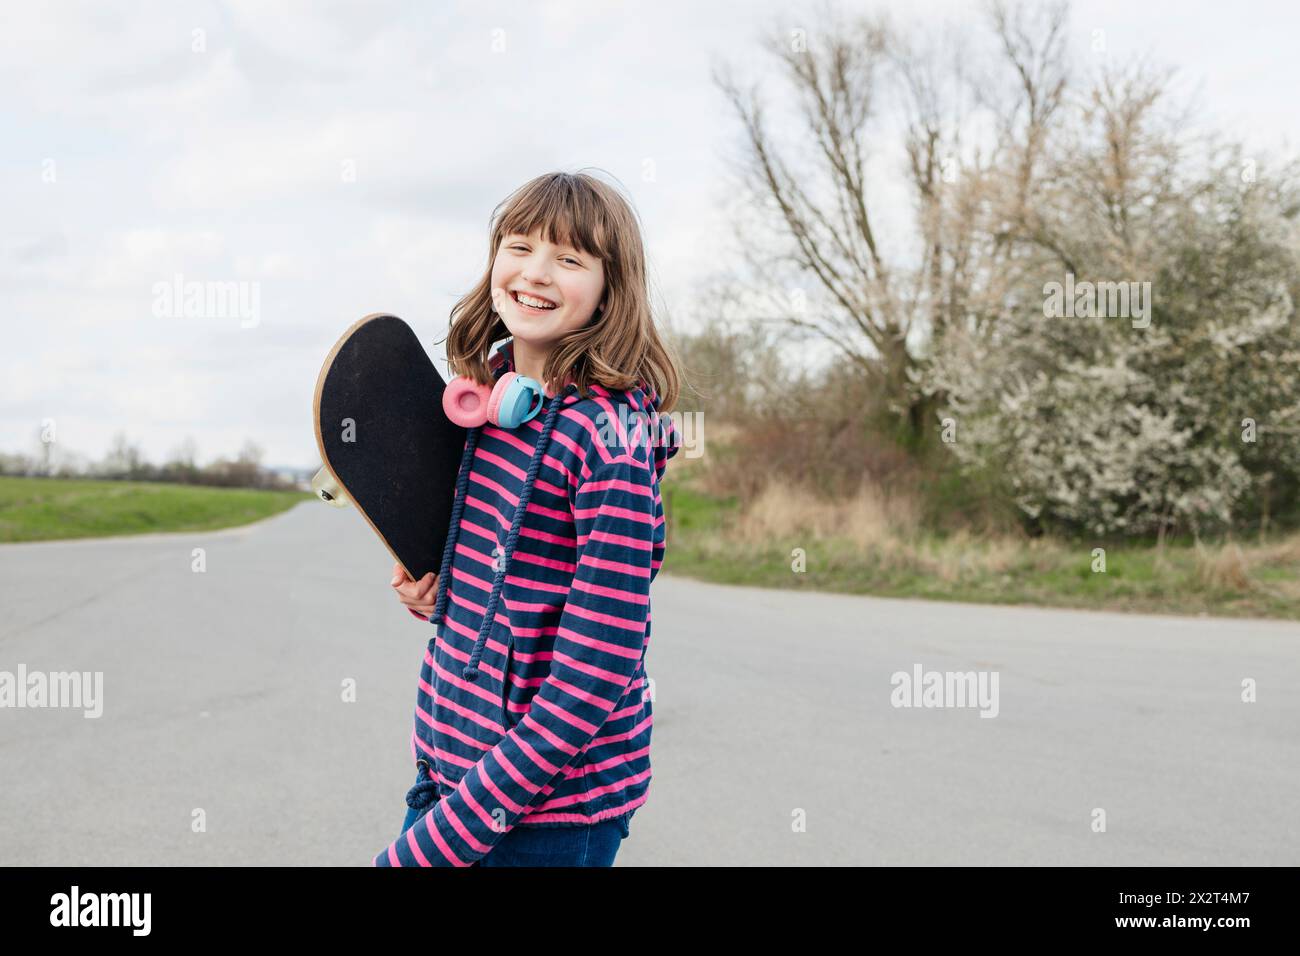 Fille heureuse debout avec skateboard sur la route Banque D'Images